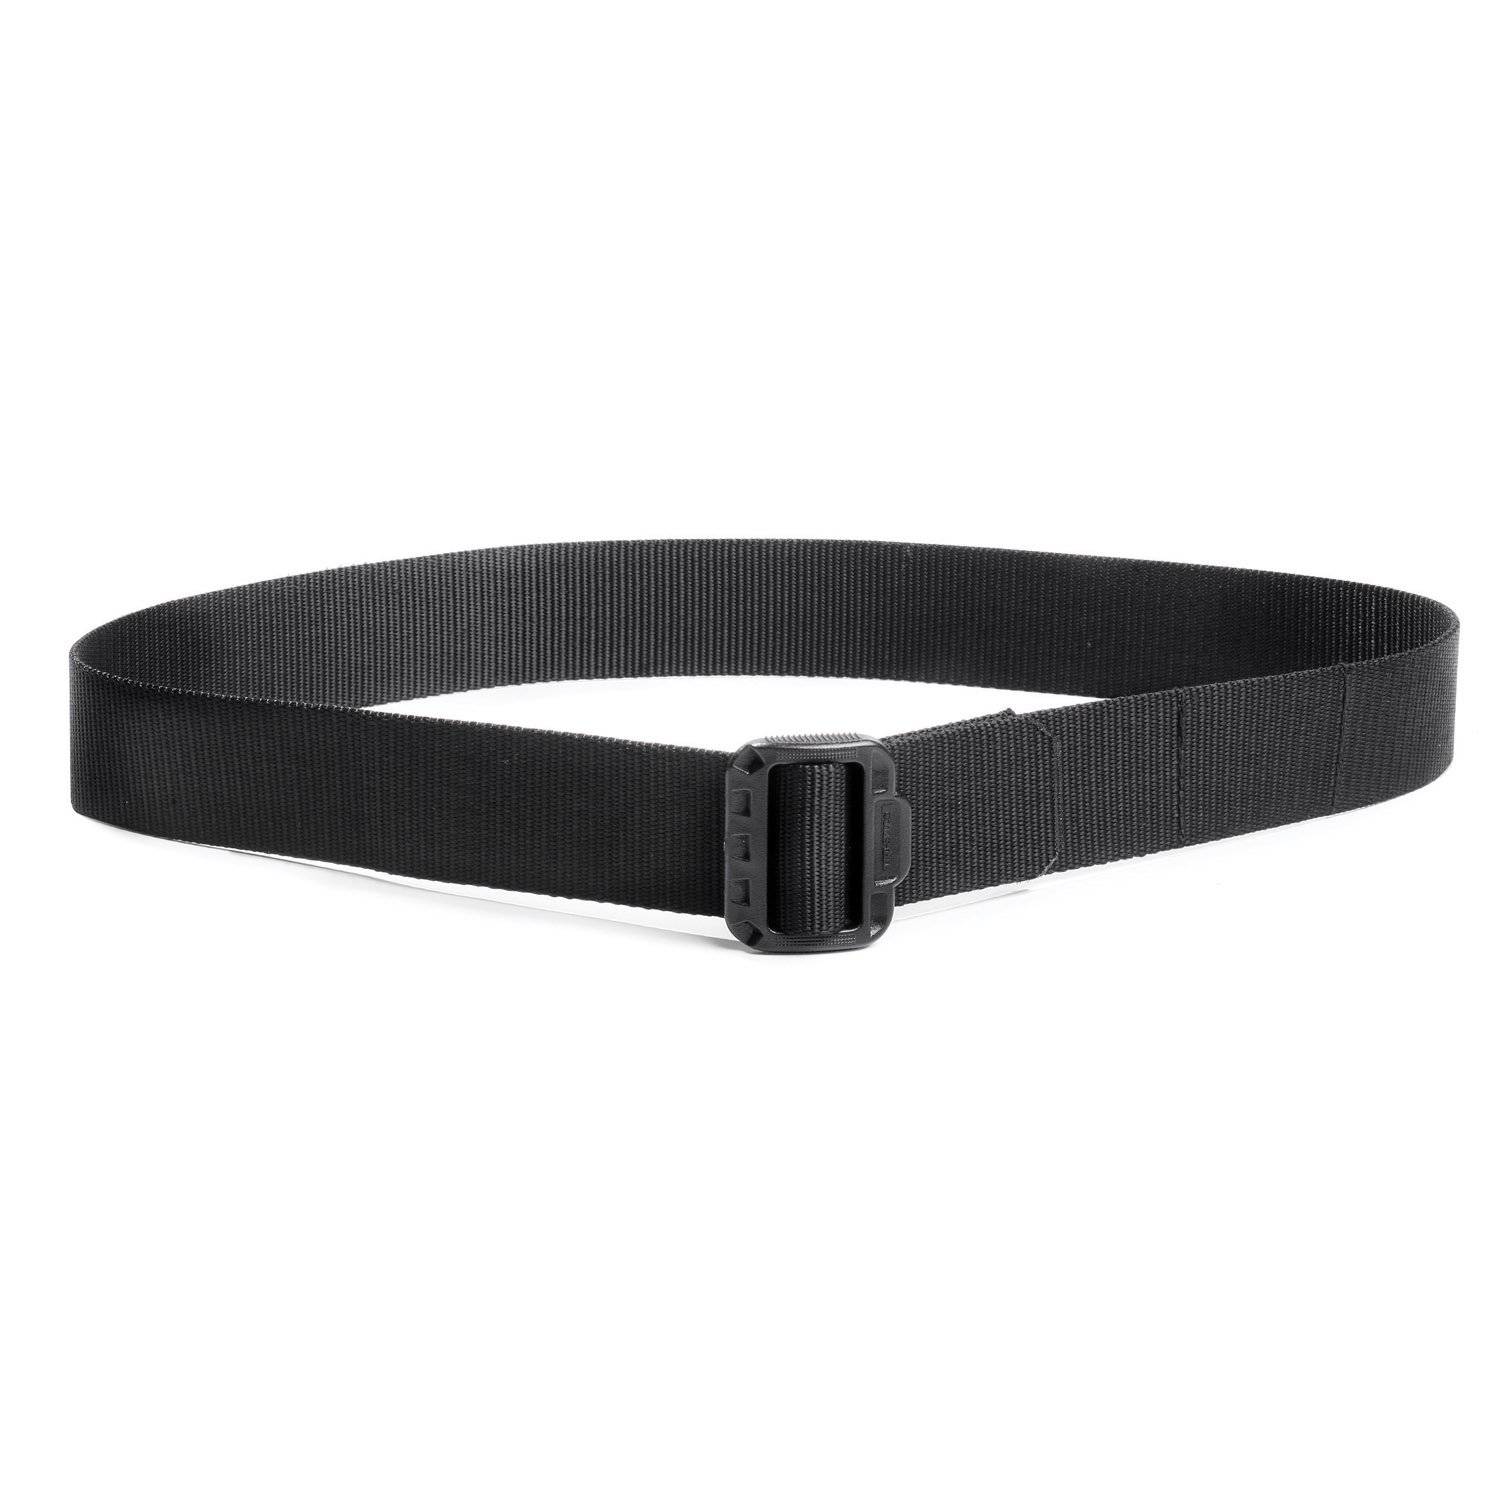 Tru-Spec 4190 Security Friendly Reversible Duty Belt Black/Charcoal 